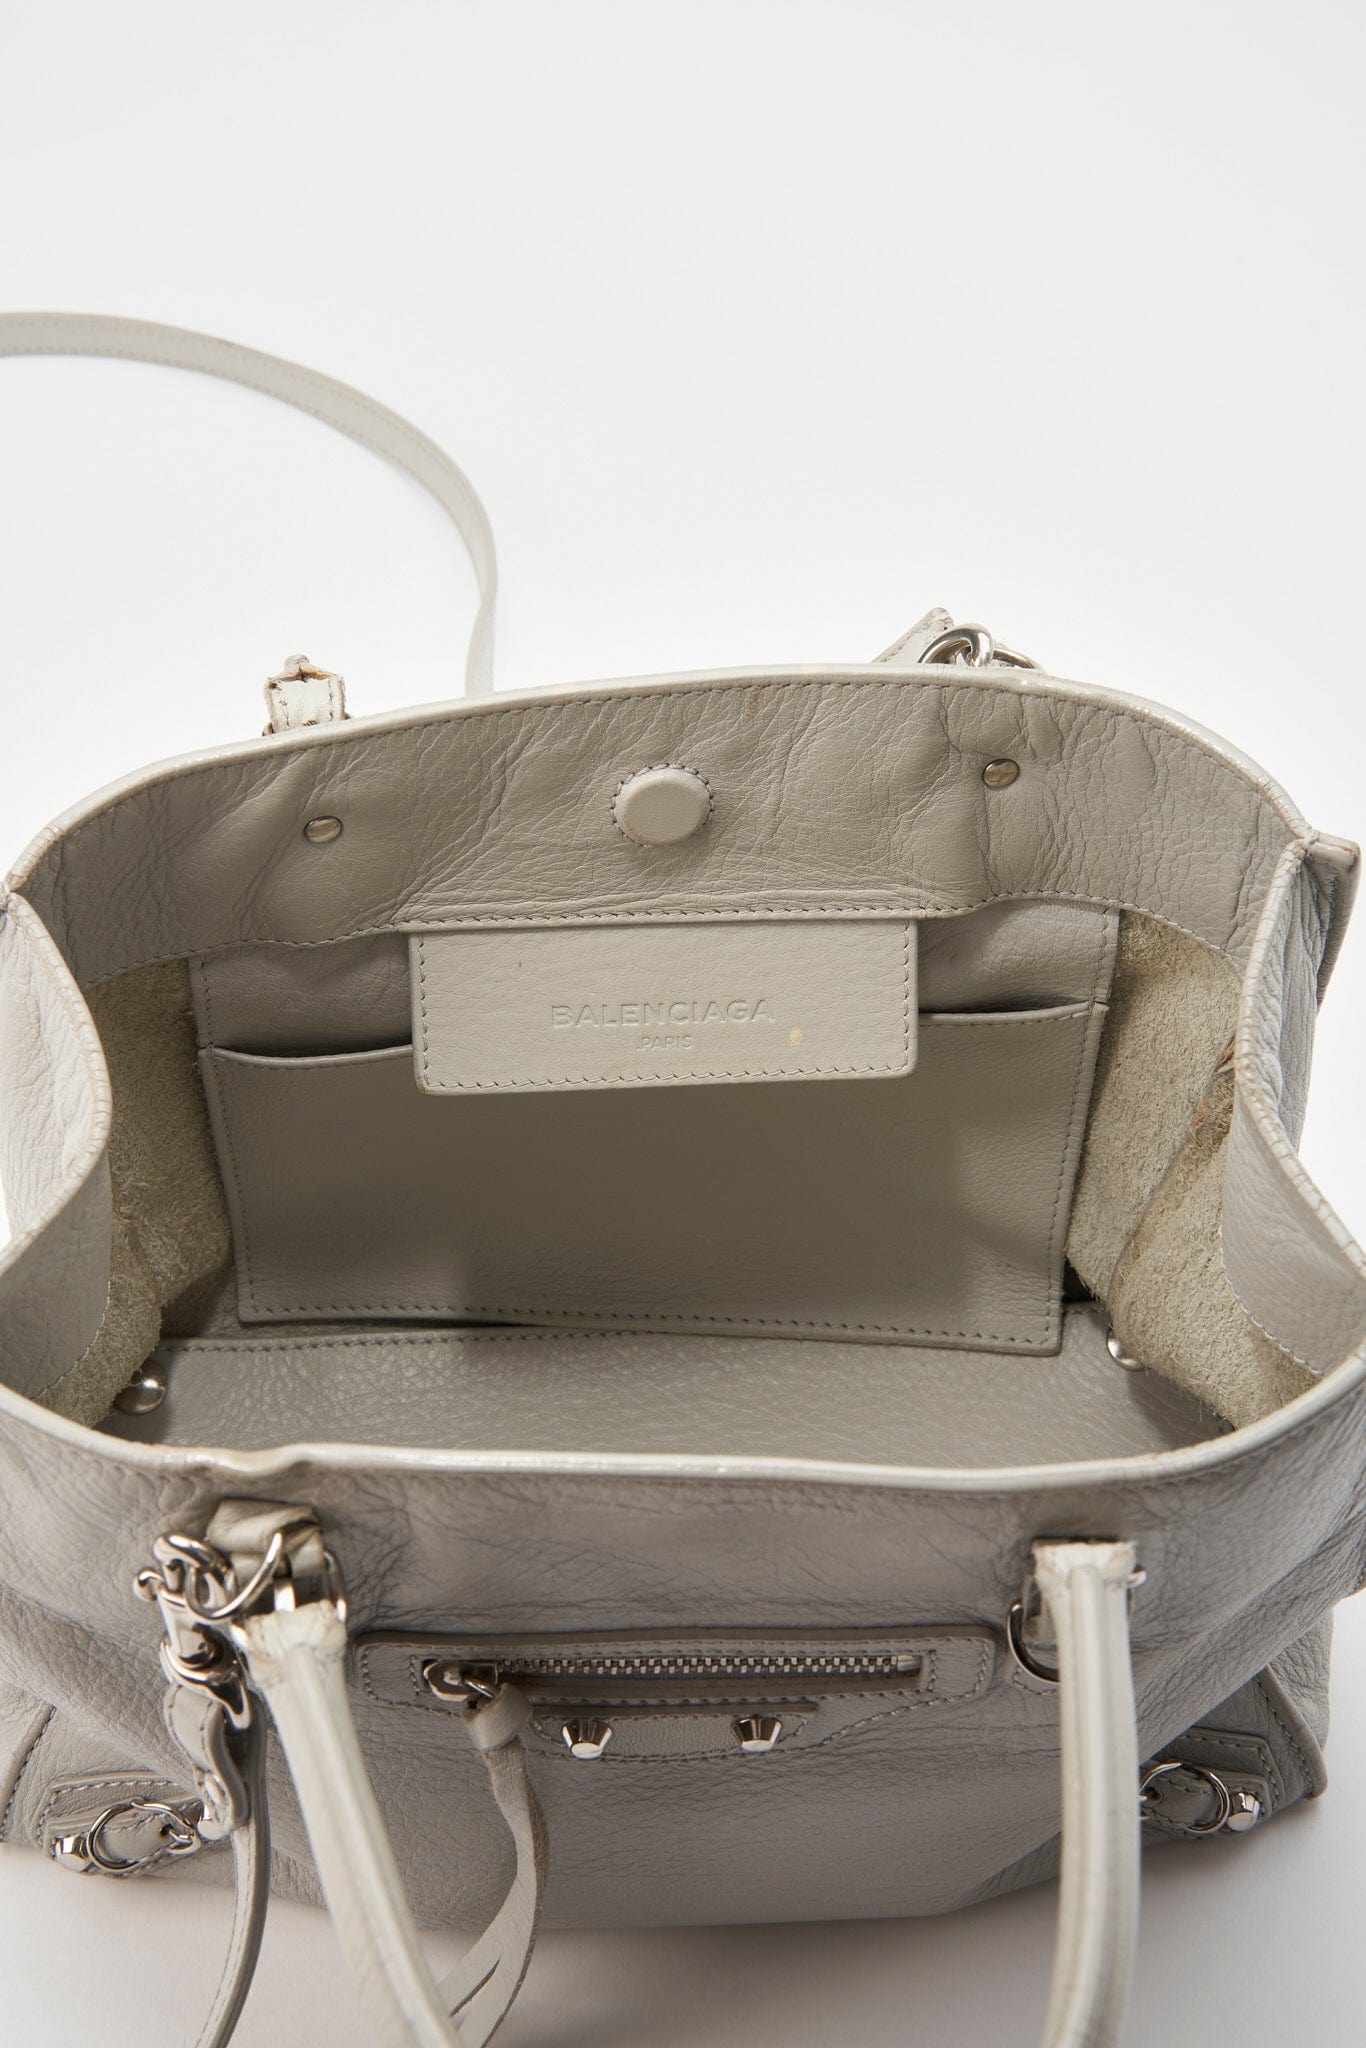 Balenciaga Papier Mini Grey Leather Bag